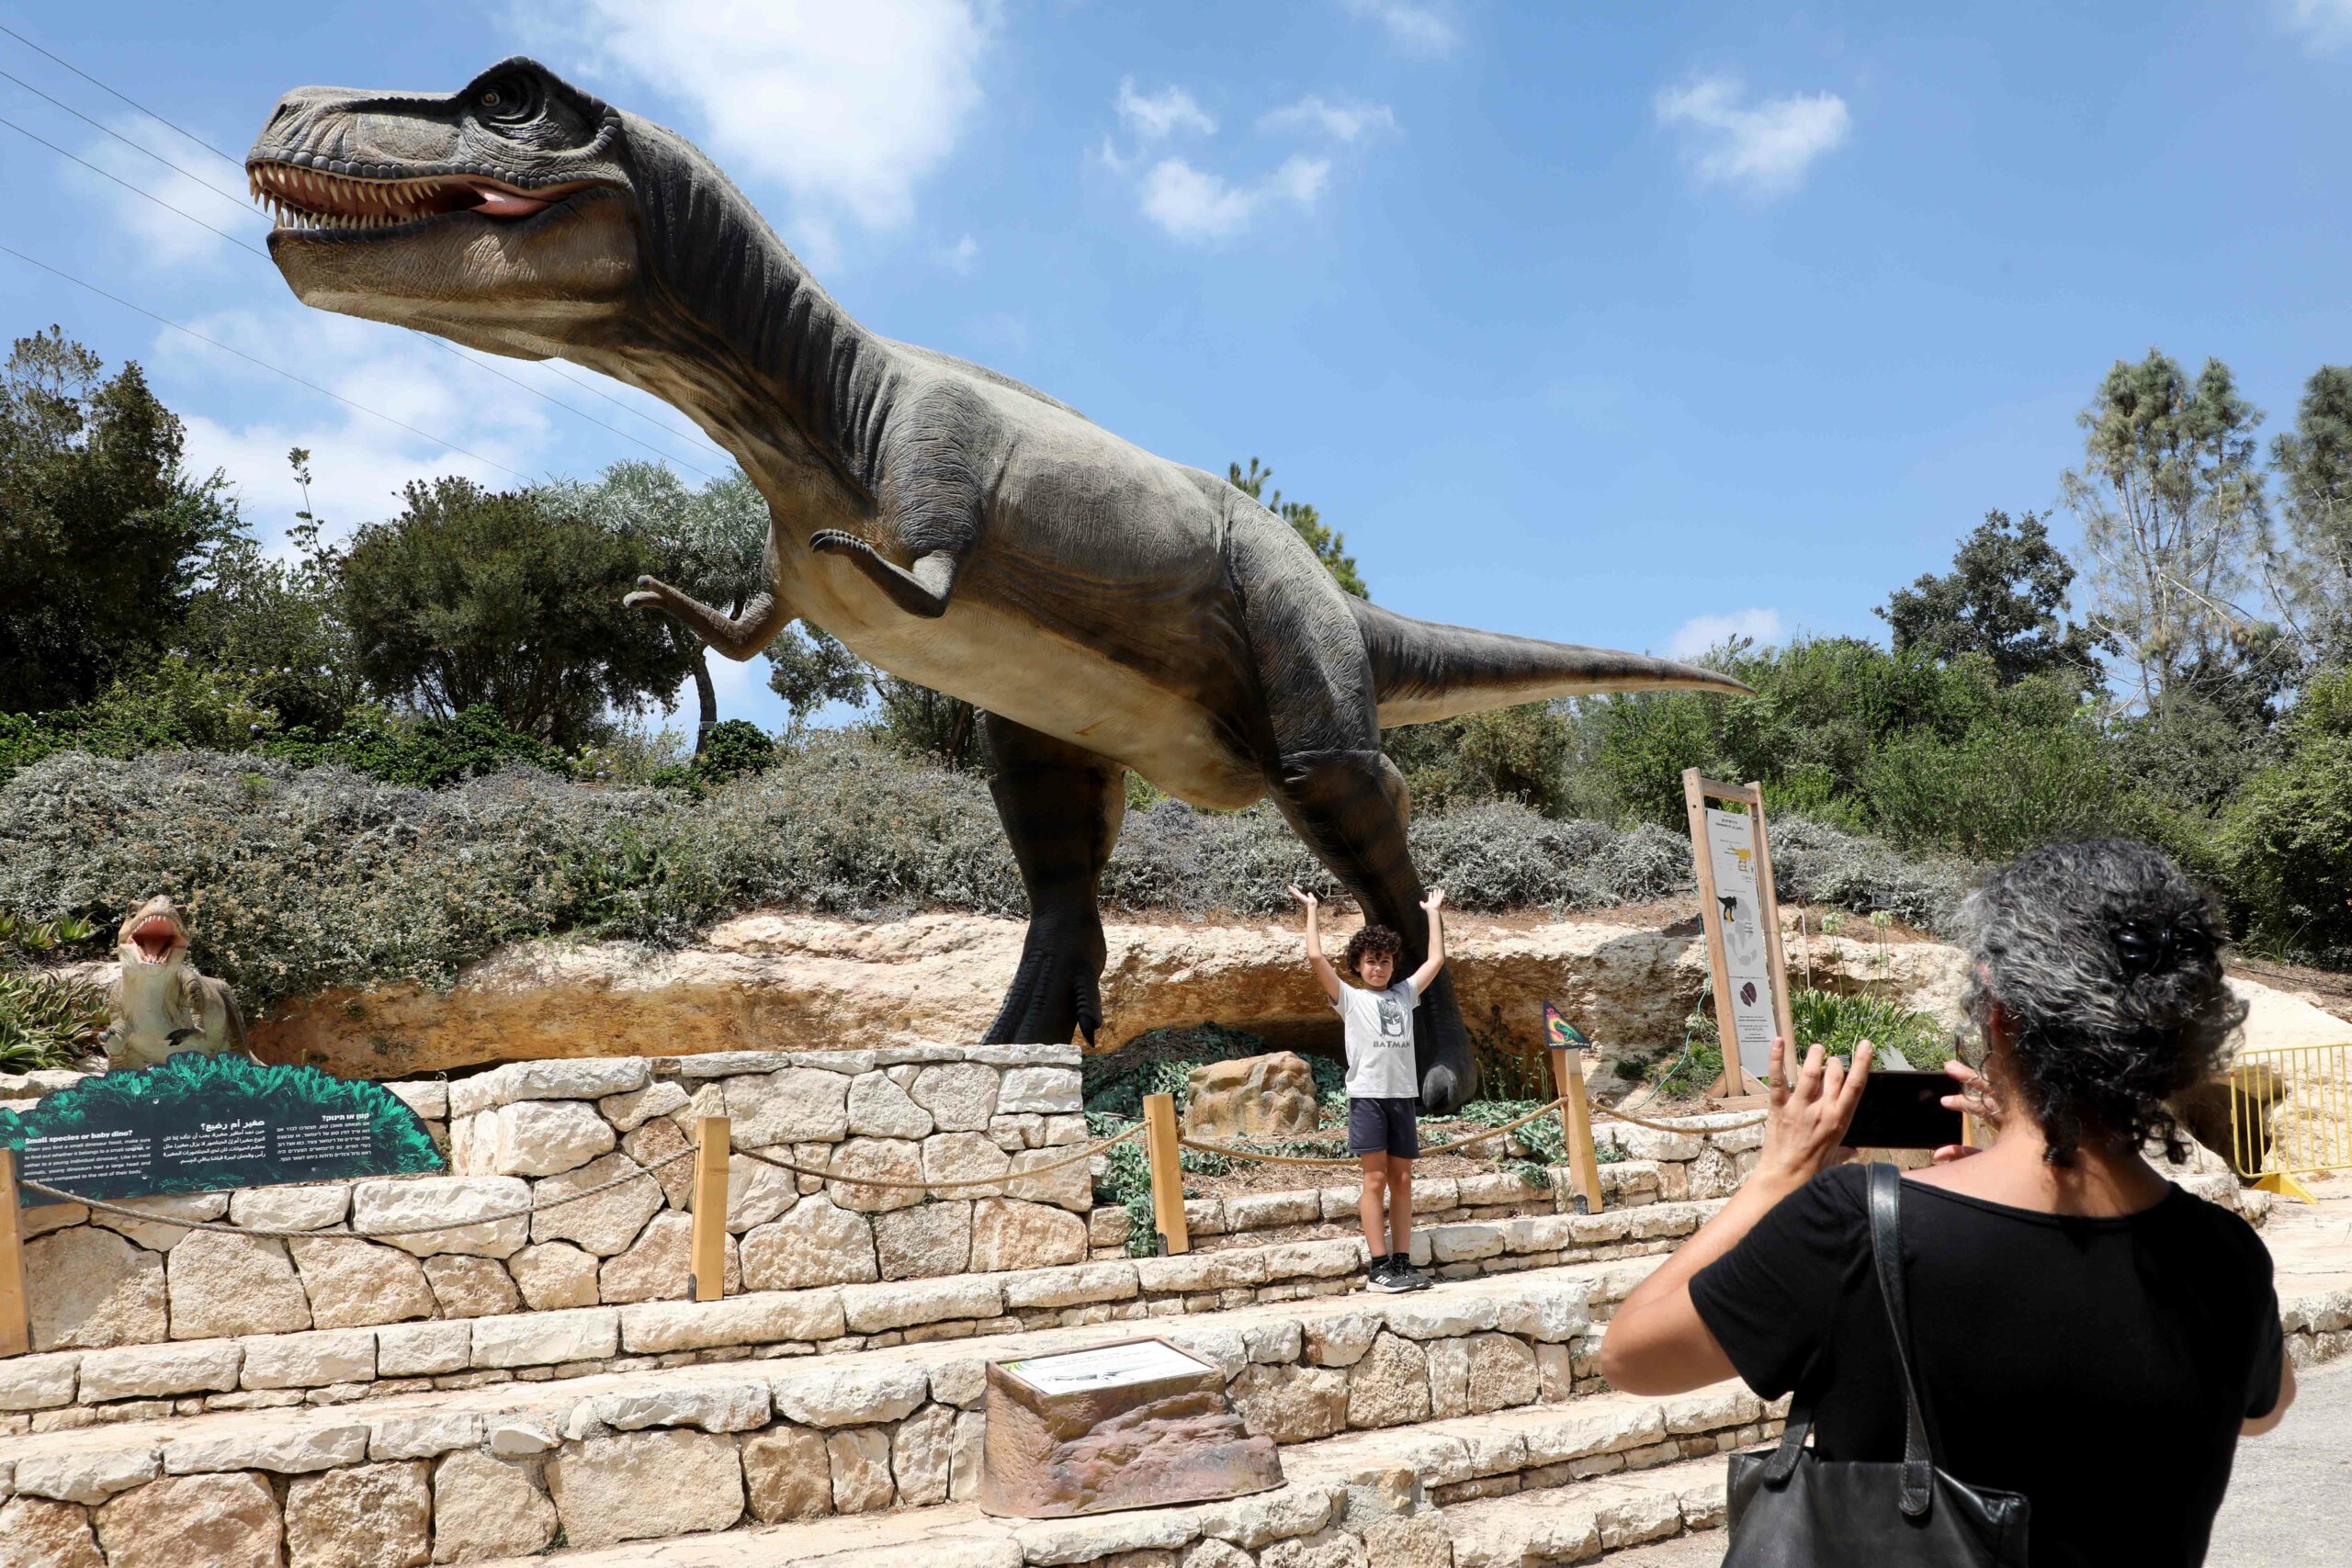 YERUSALEM, Orang-orang mengunjungi pameran model dinosaurus di sebuah taman botani di Yerusalem pada 14 Agustus 2022. (Xinhua/Gil Cohen Magen)